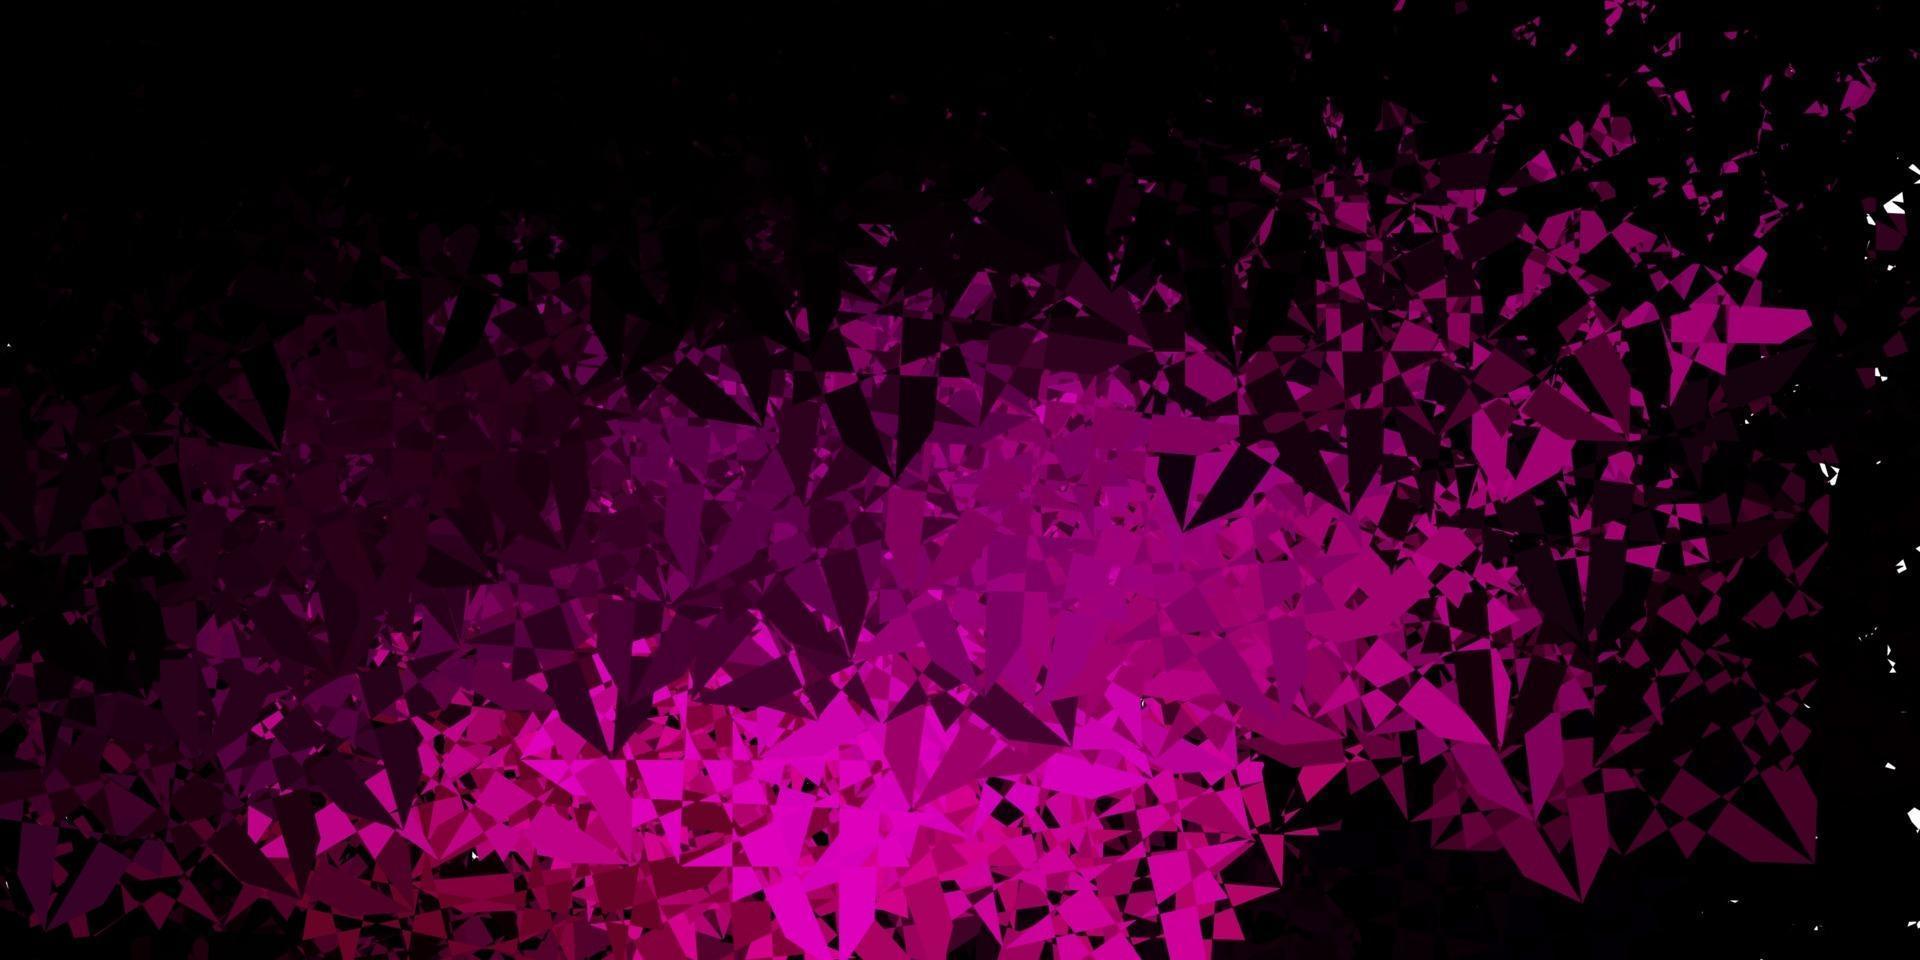 sfondo vettoriale rosa scuro con forme poligonali.